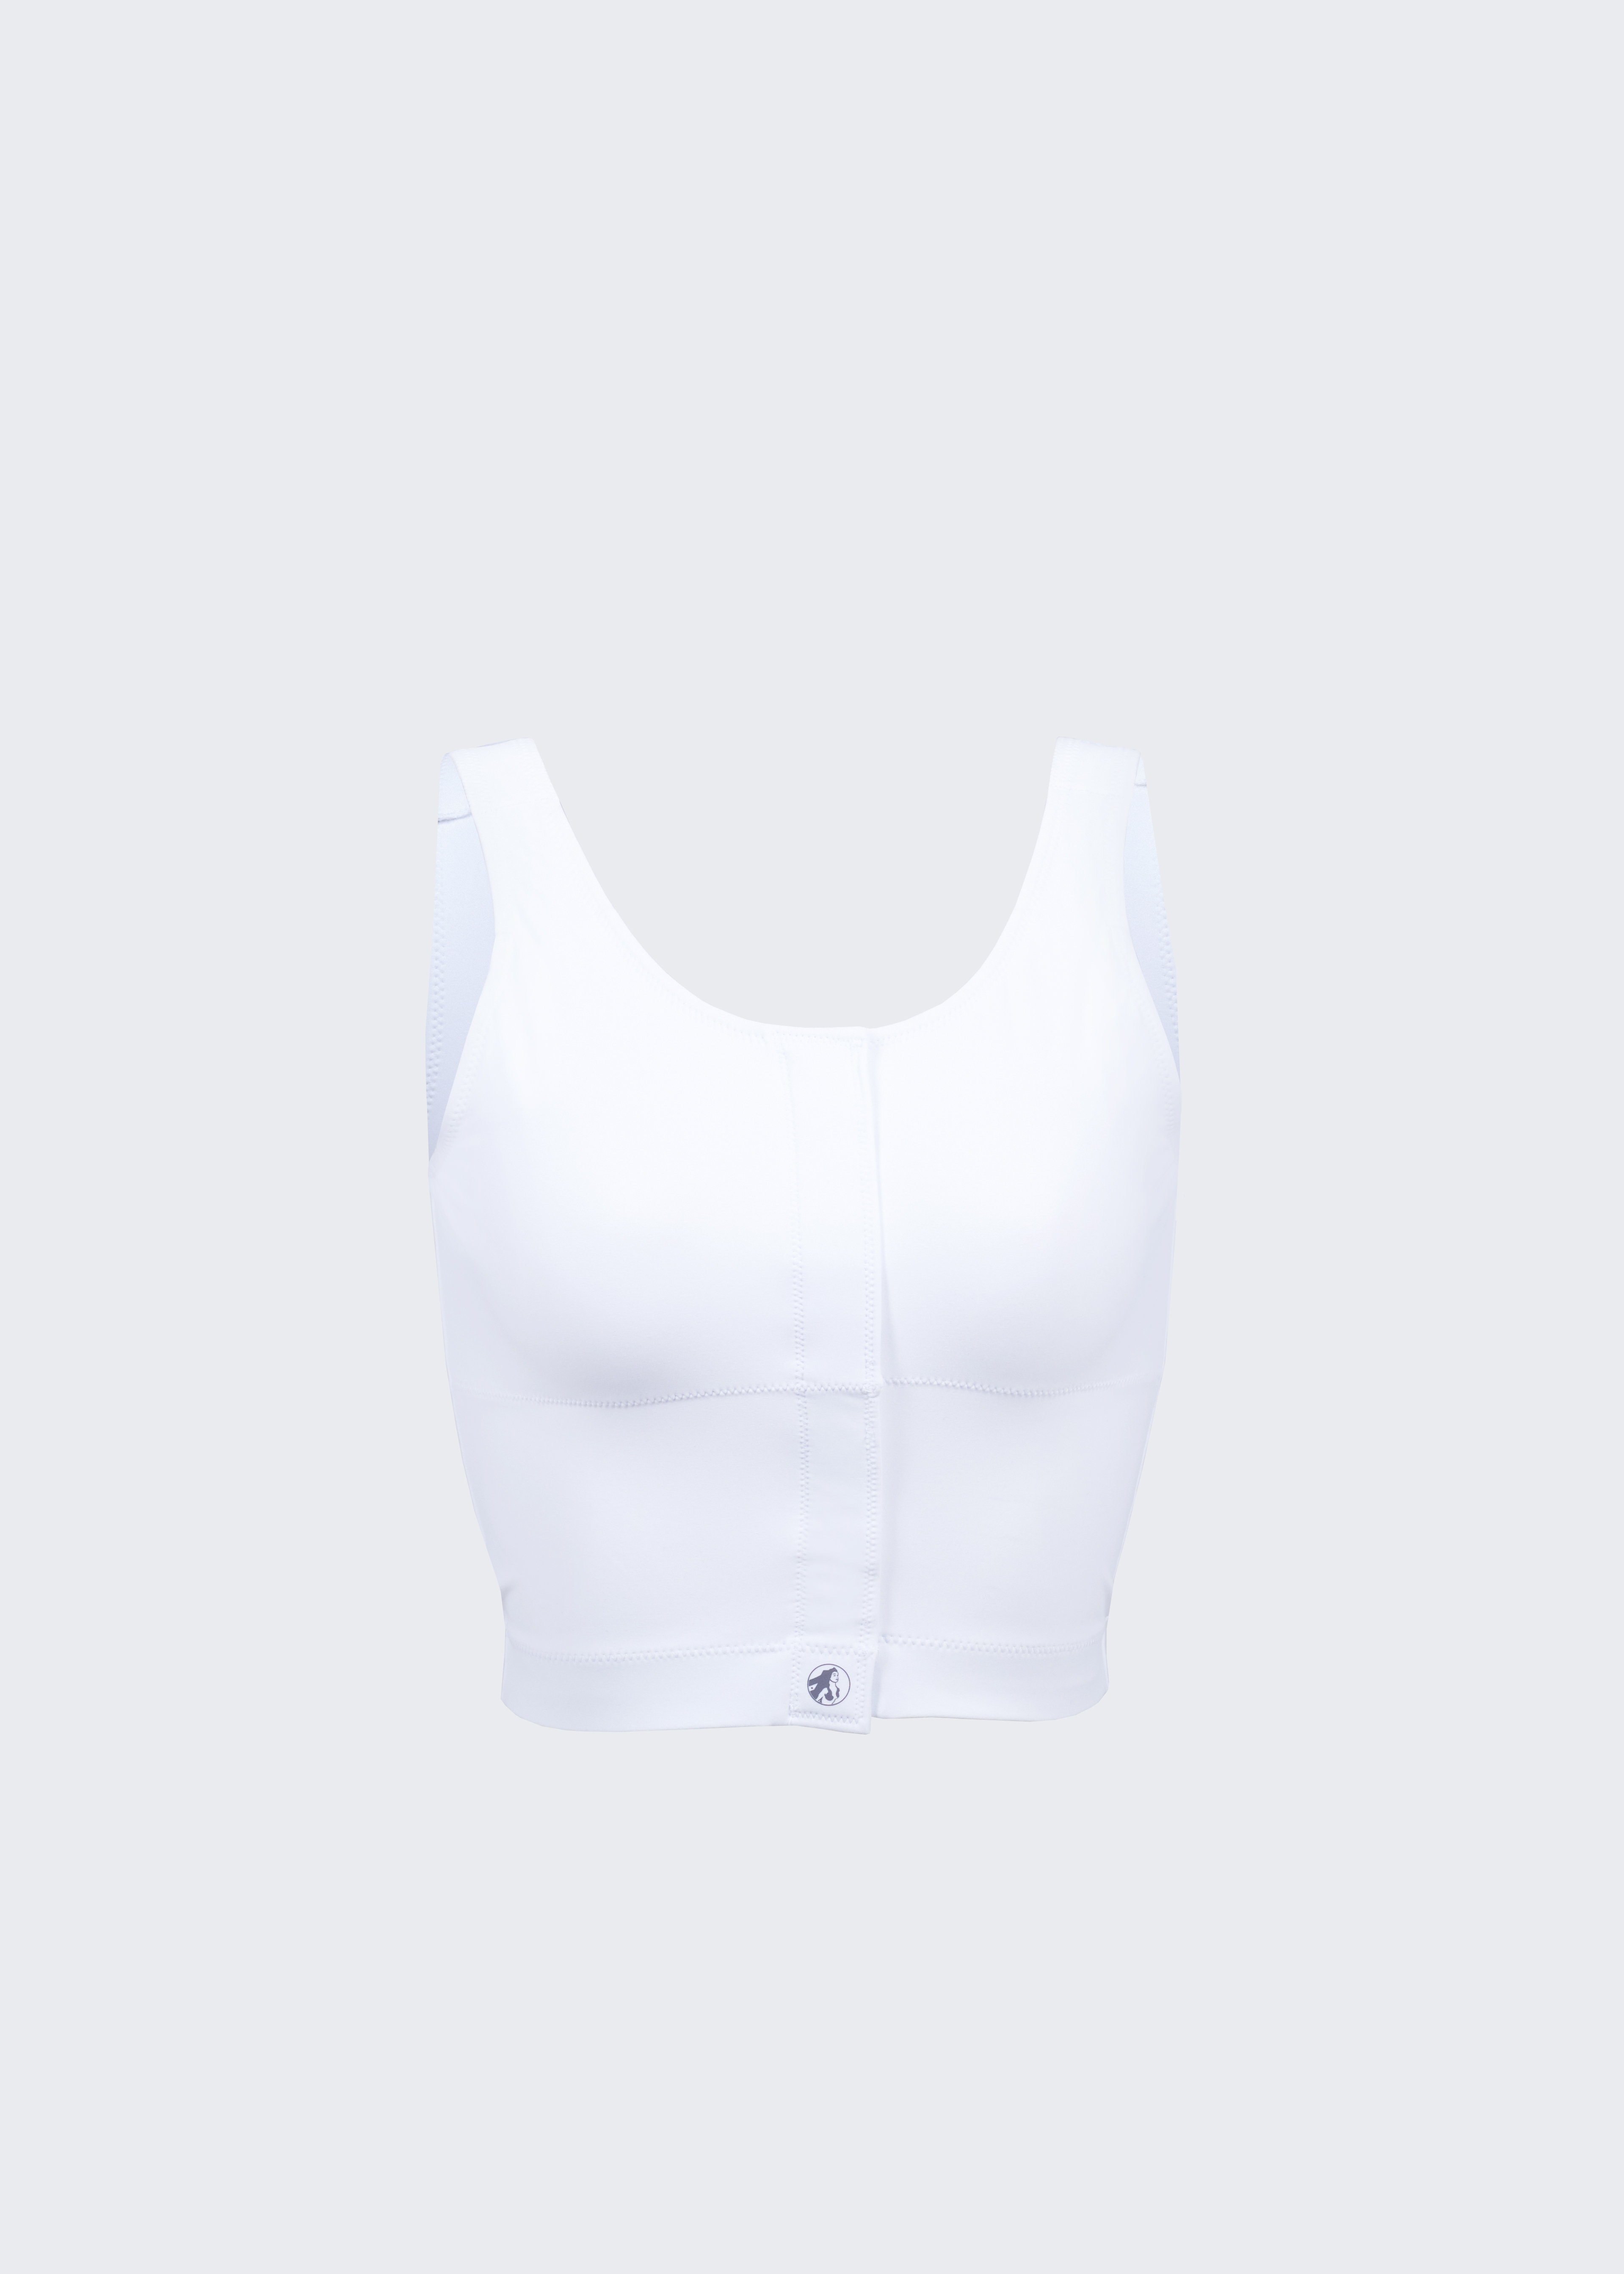 Lauren Silva Arthritis Bra Style 714 - White - 32B/C/D/DD at  Women's  Clothing store: Bras